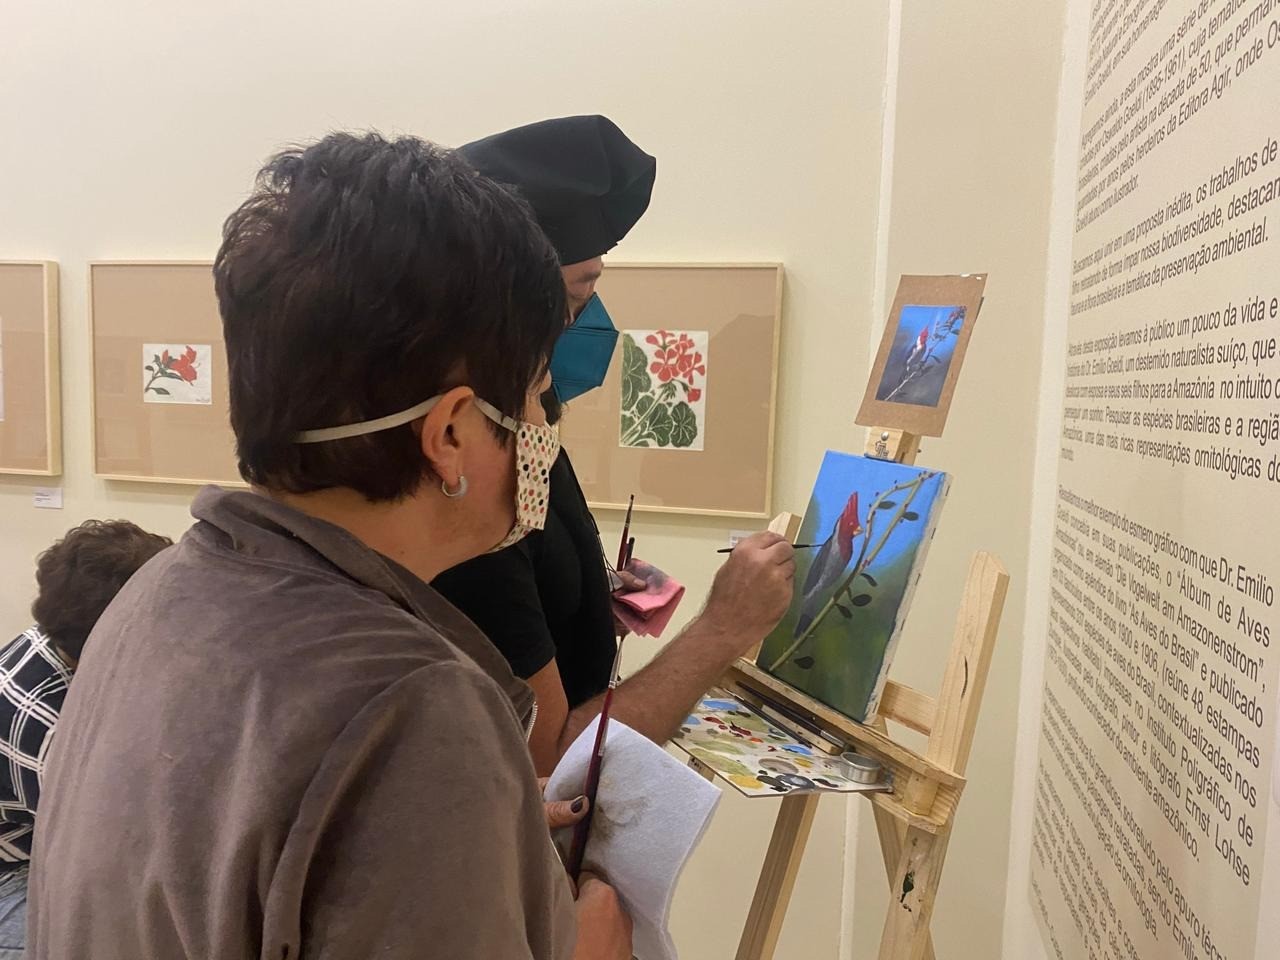 アーティストのマルシオ・カルネイロ (黒のキャップで) 彼が教えた絵画ワークショップの間に 3 7月の展示スペース「ブラジルの動植物」, Via ValeGardenショッピングはありません. 写真: ディスクロージャー.